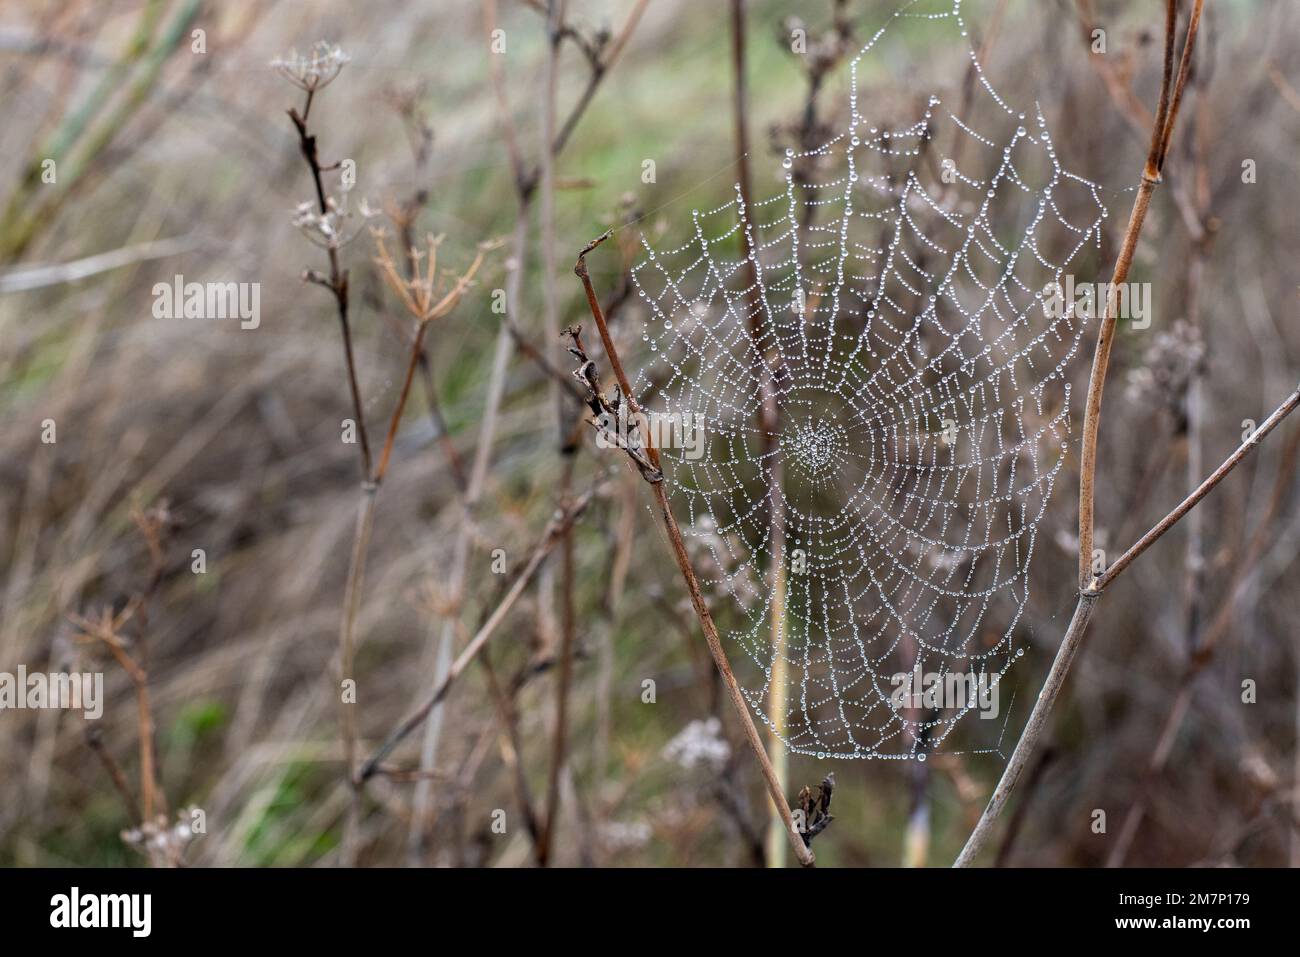 Gotas de agua de rocío atrapadas en una tela de araña en una mañana fría de invierno Stock Photo